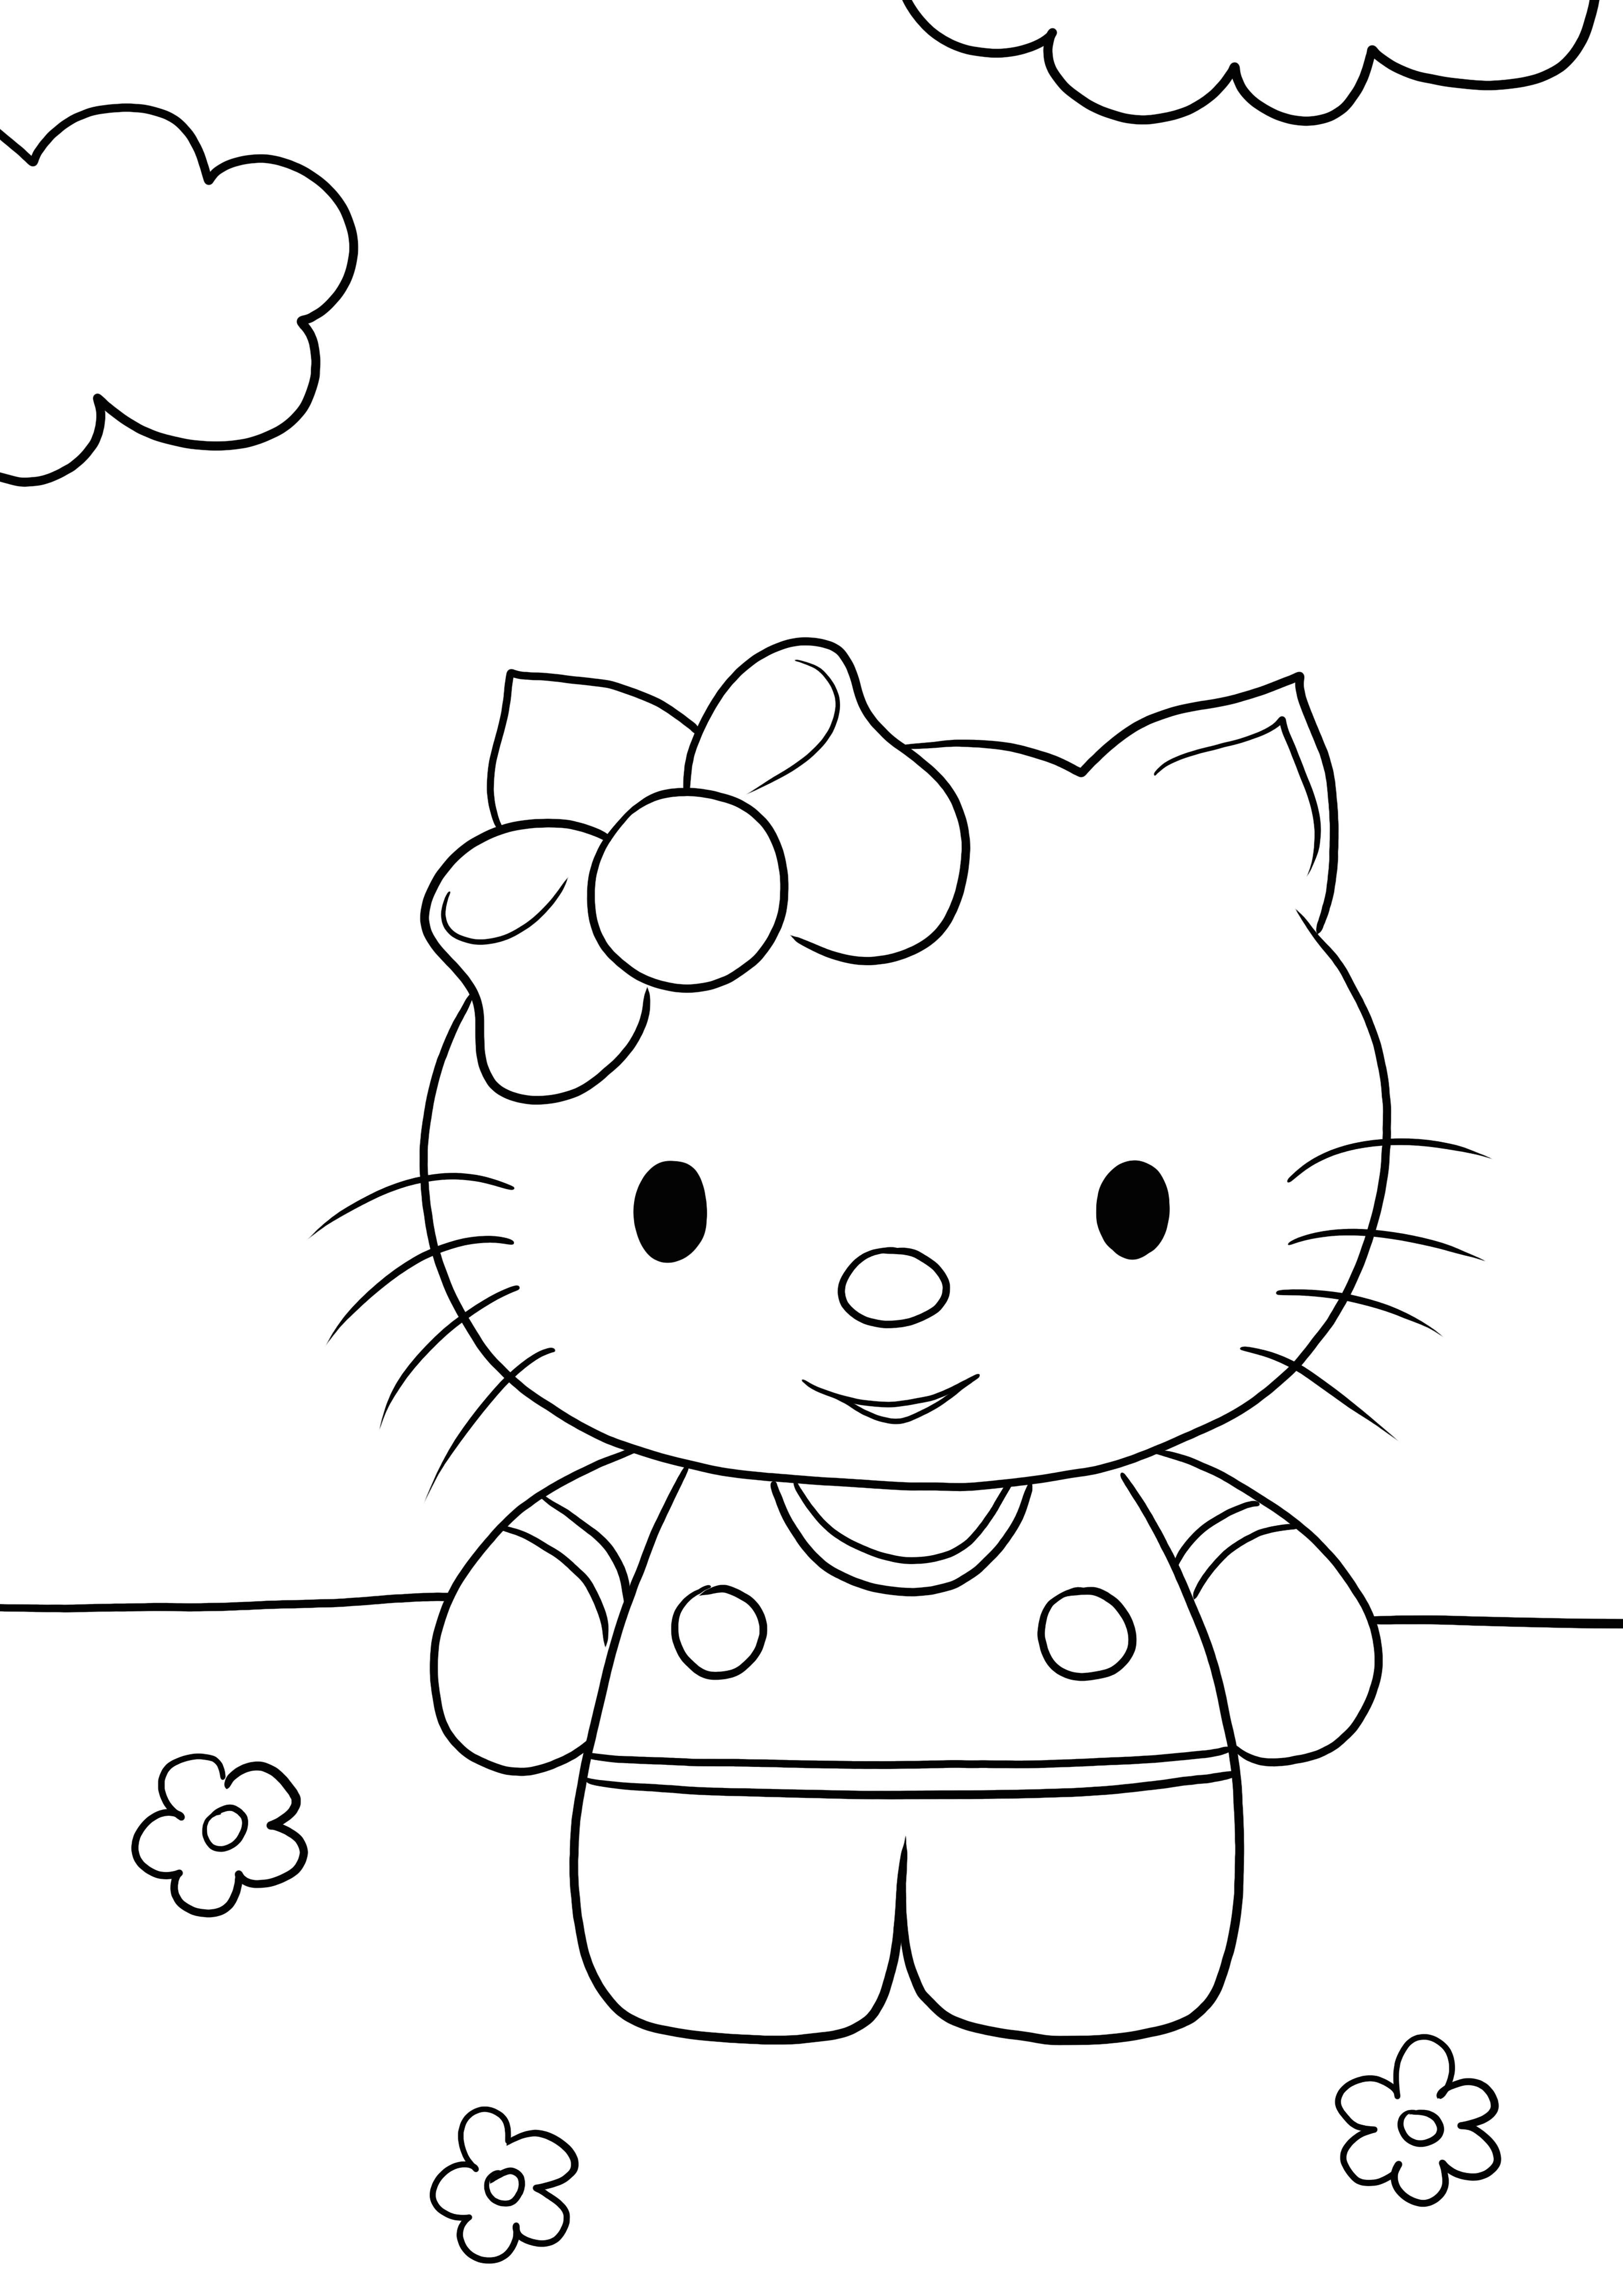 Kostenloses Ausmalbild der lächelnden Hello Kitty zum Ausdrucken oder Herunterladen